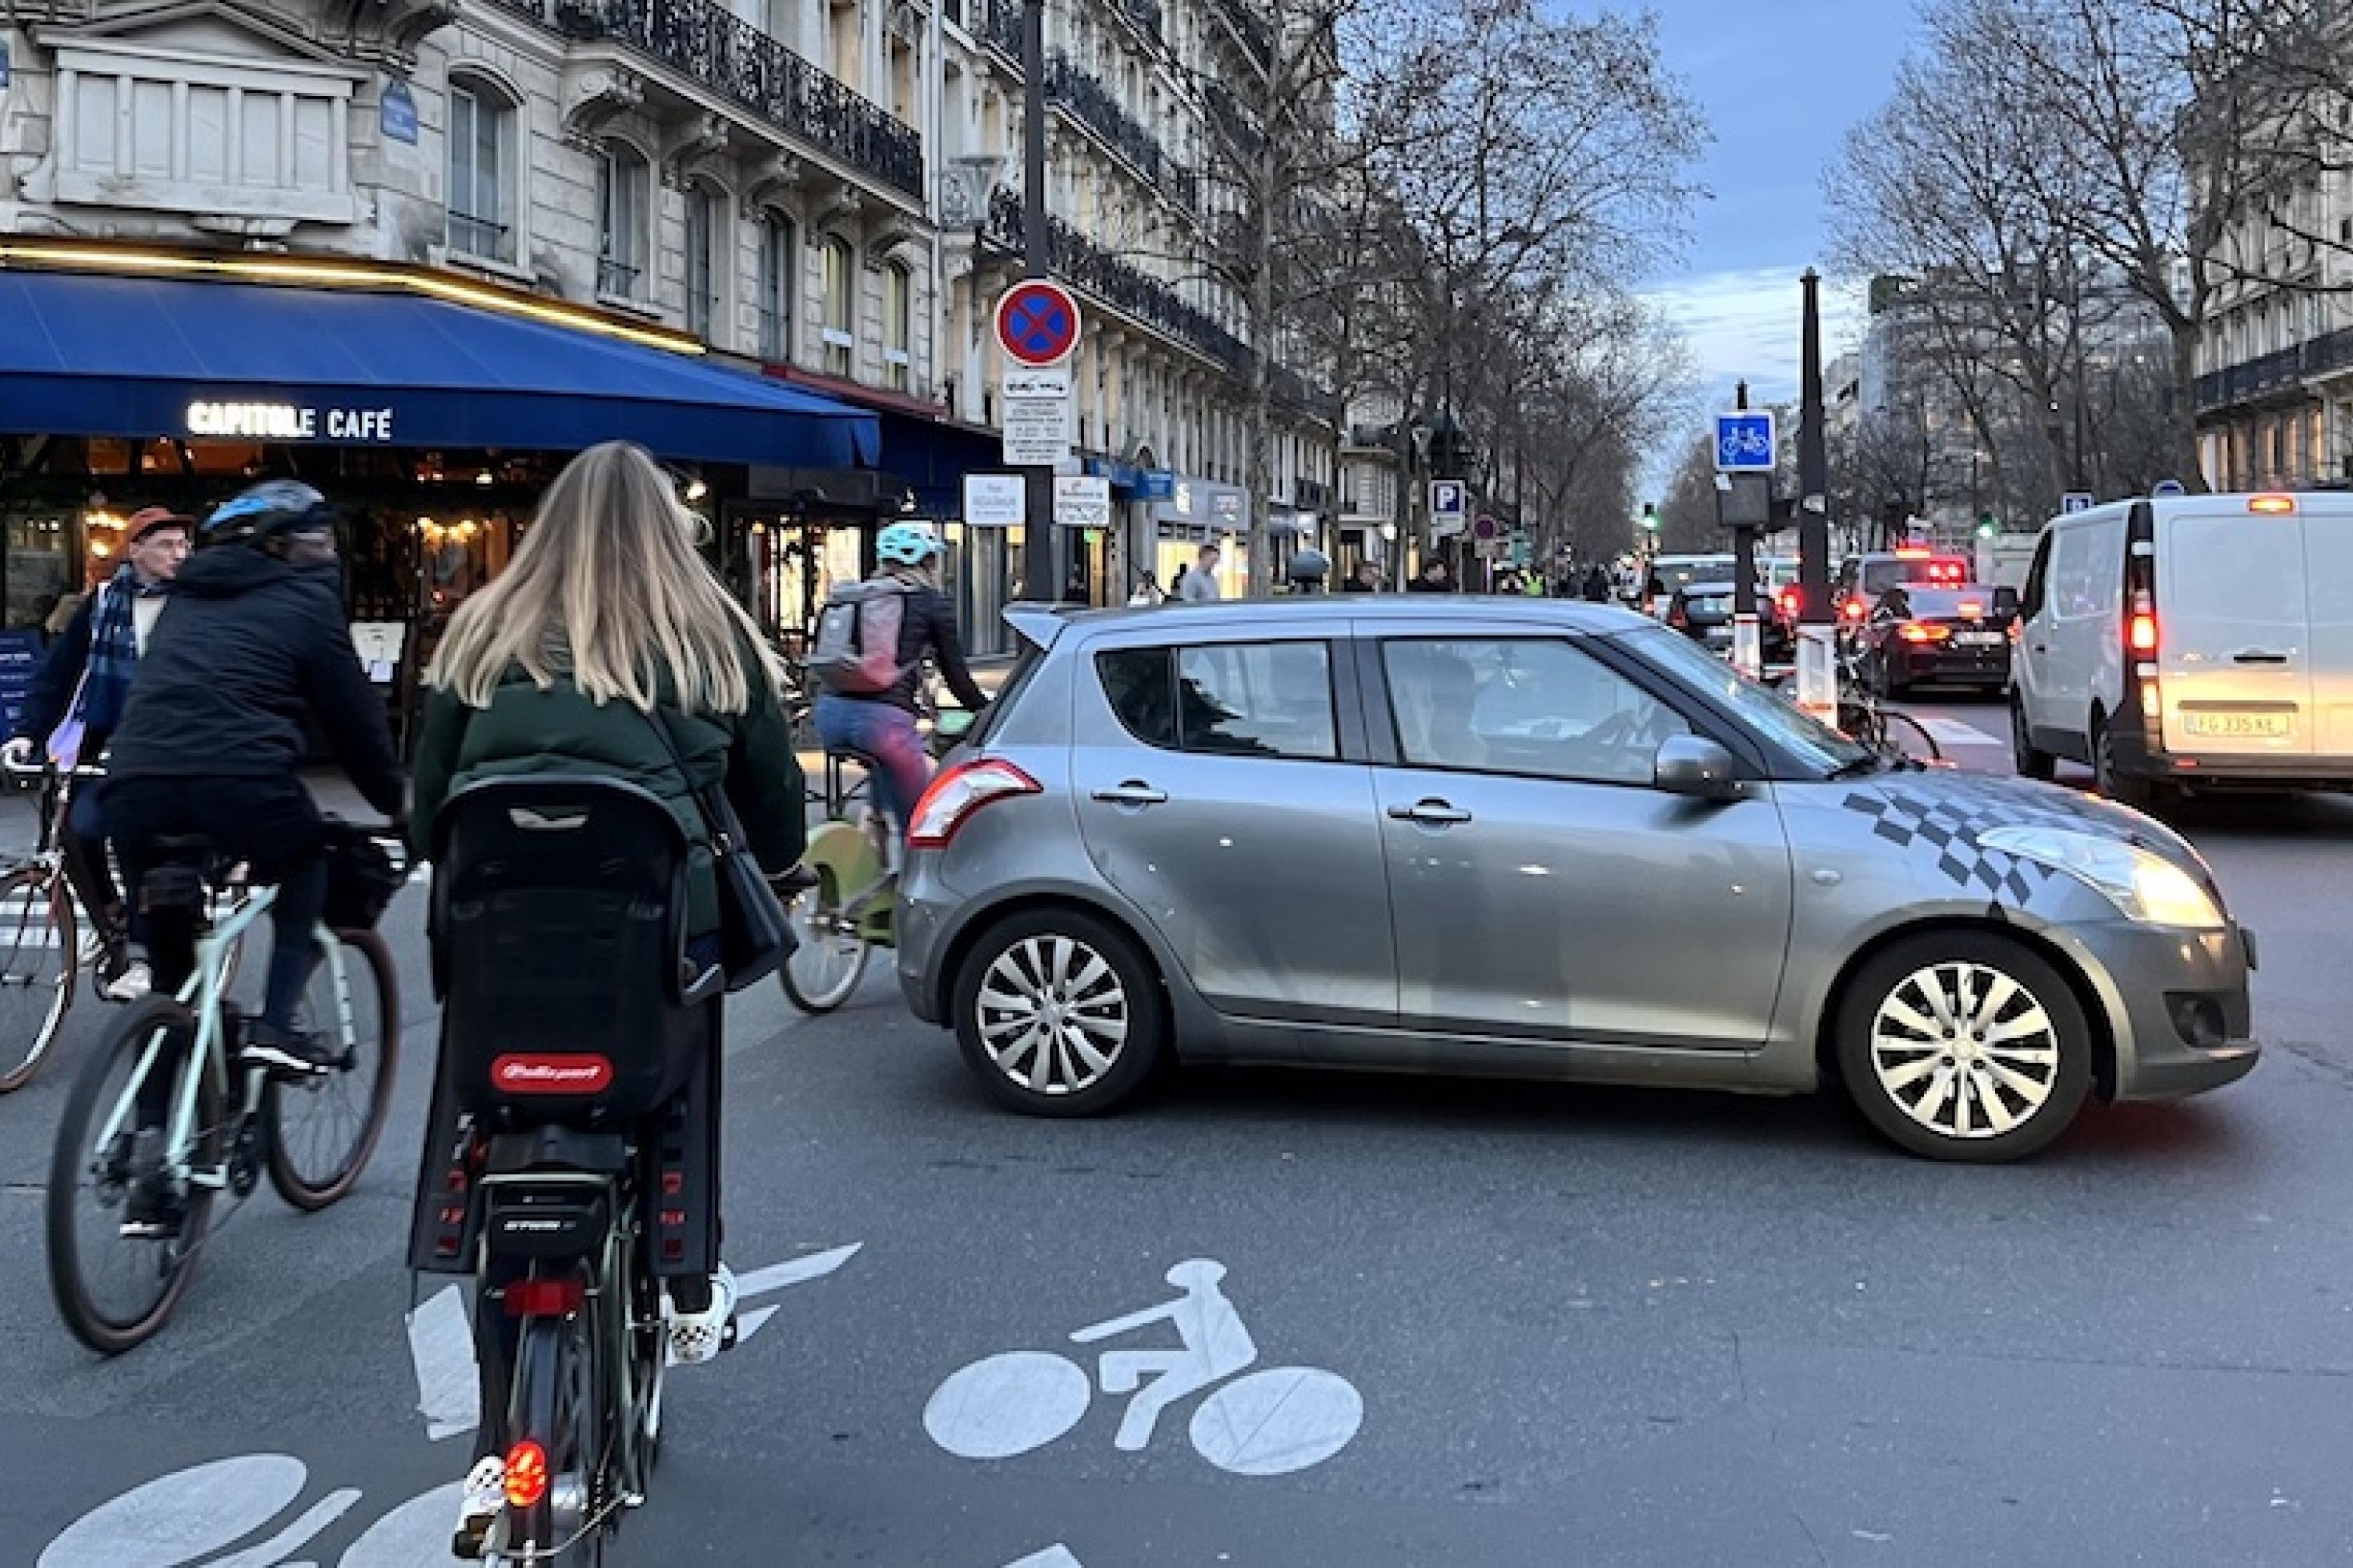 Eine Straßenszene in Paris. Auf der rechten Bildhälfte stauen sich PKWs, auf der der linken Radfahrer. Der Radweg wird von einem abbiegenden Auto blockiert.